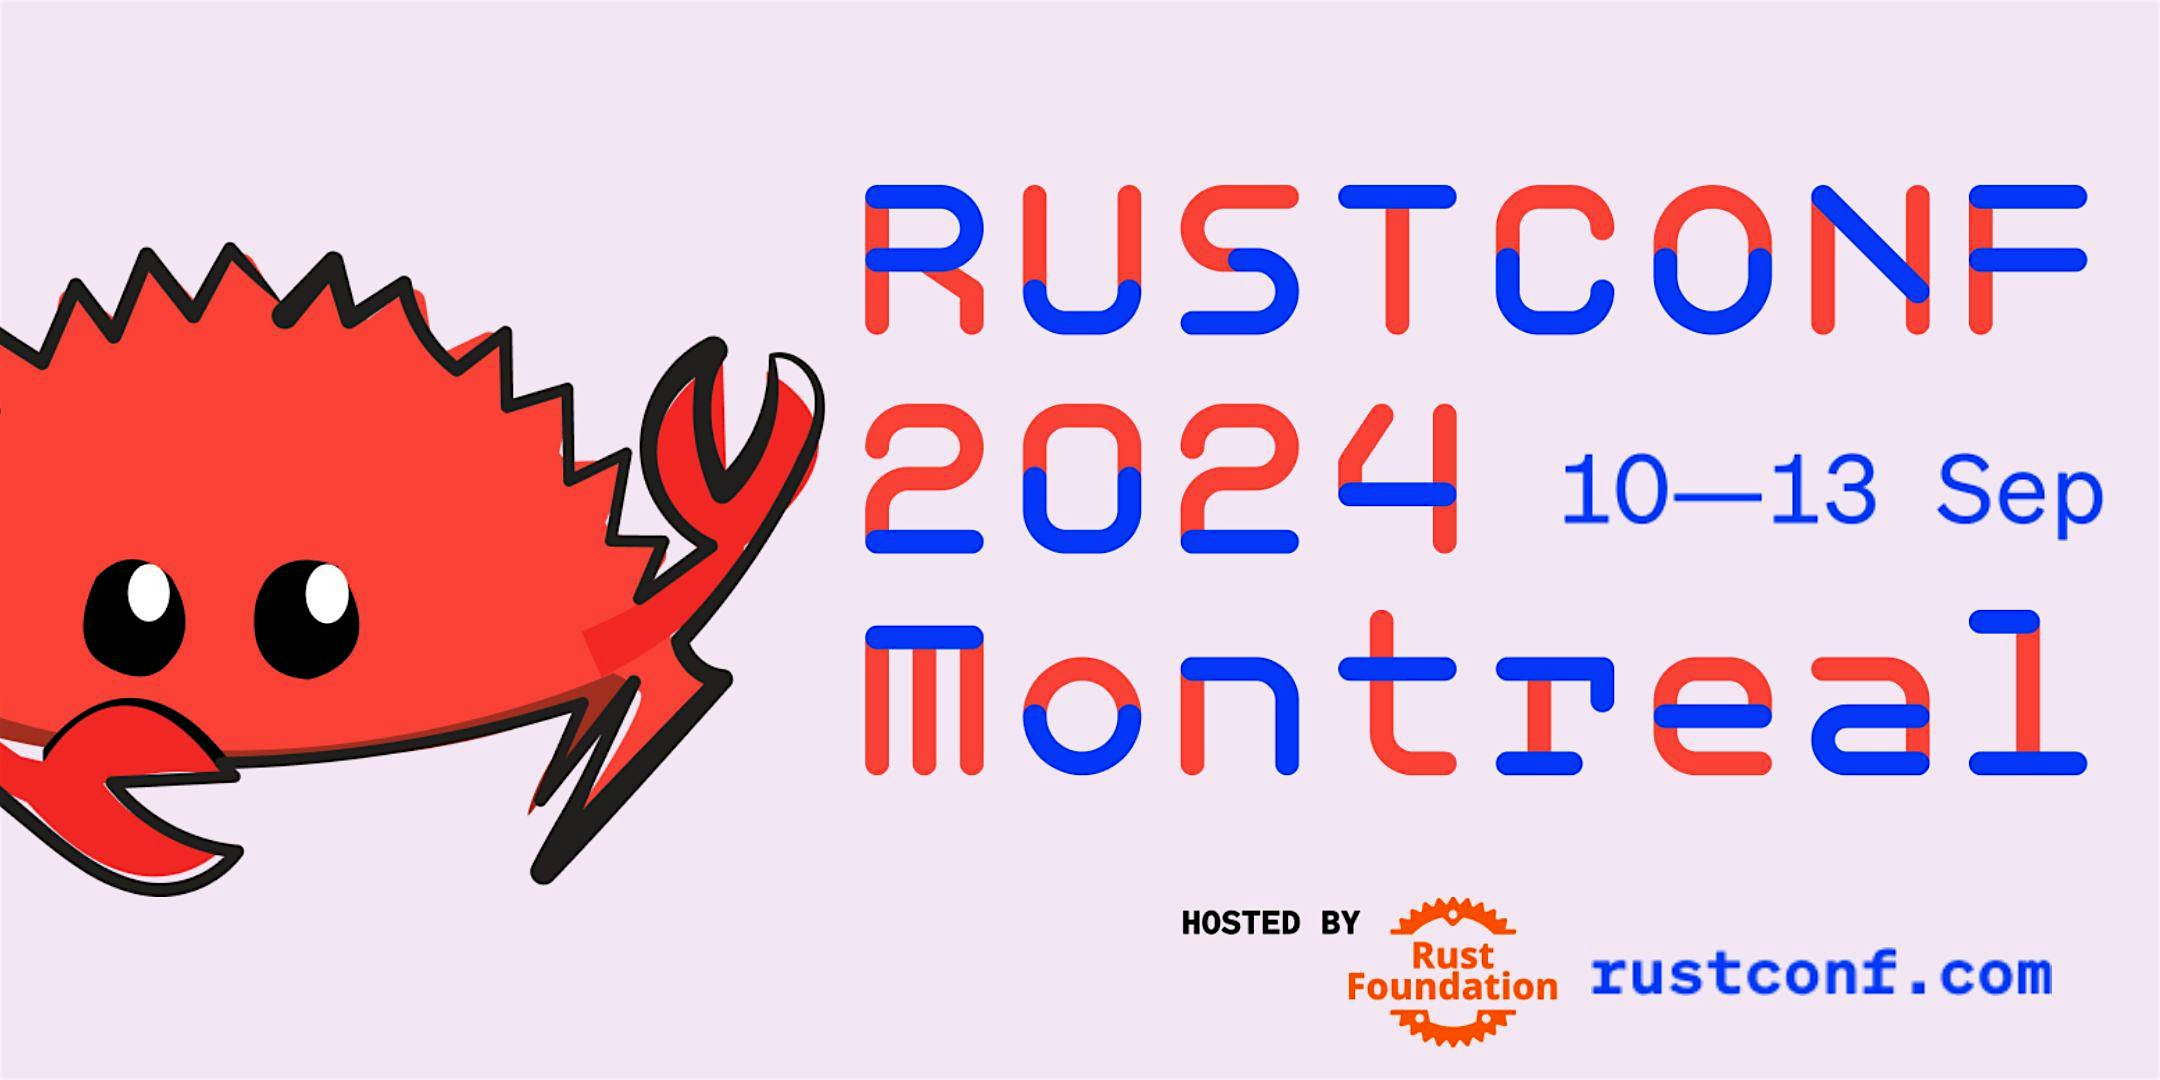 RustConf 2024